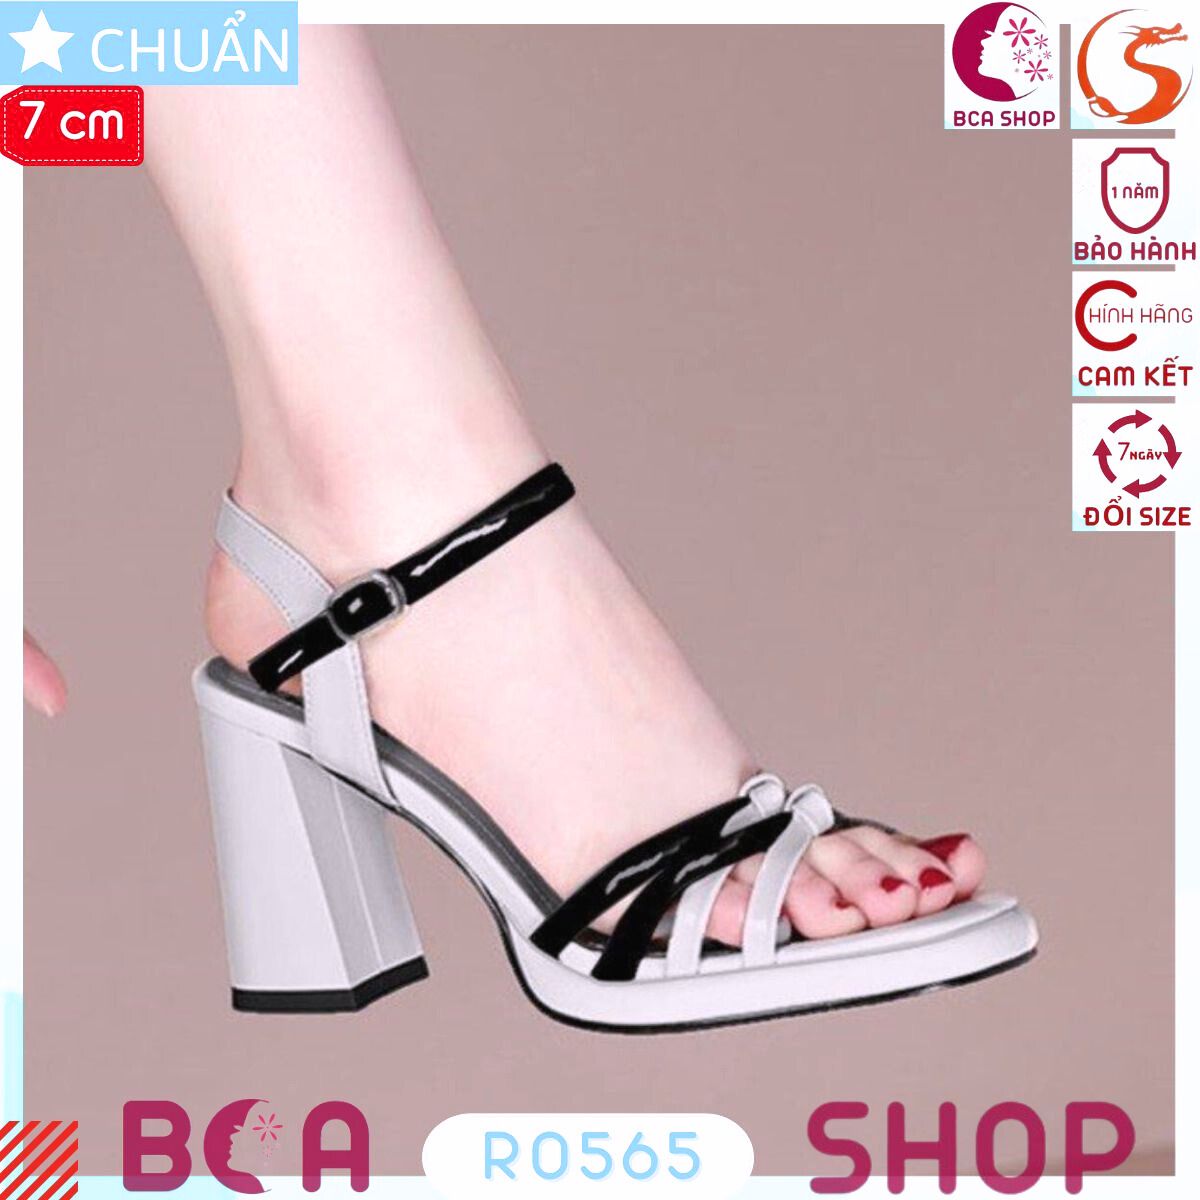 Sandal cao gót nữ 7p RO565 ROSATA tại BCASHOP phối màu sang trọng và thời trang, mang sang chân mà êm ái lắm ạ